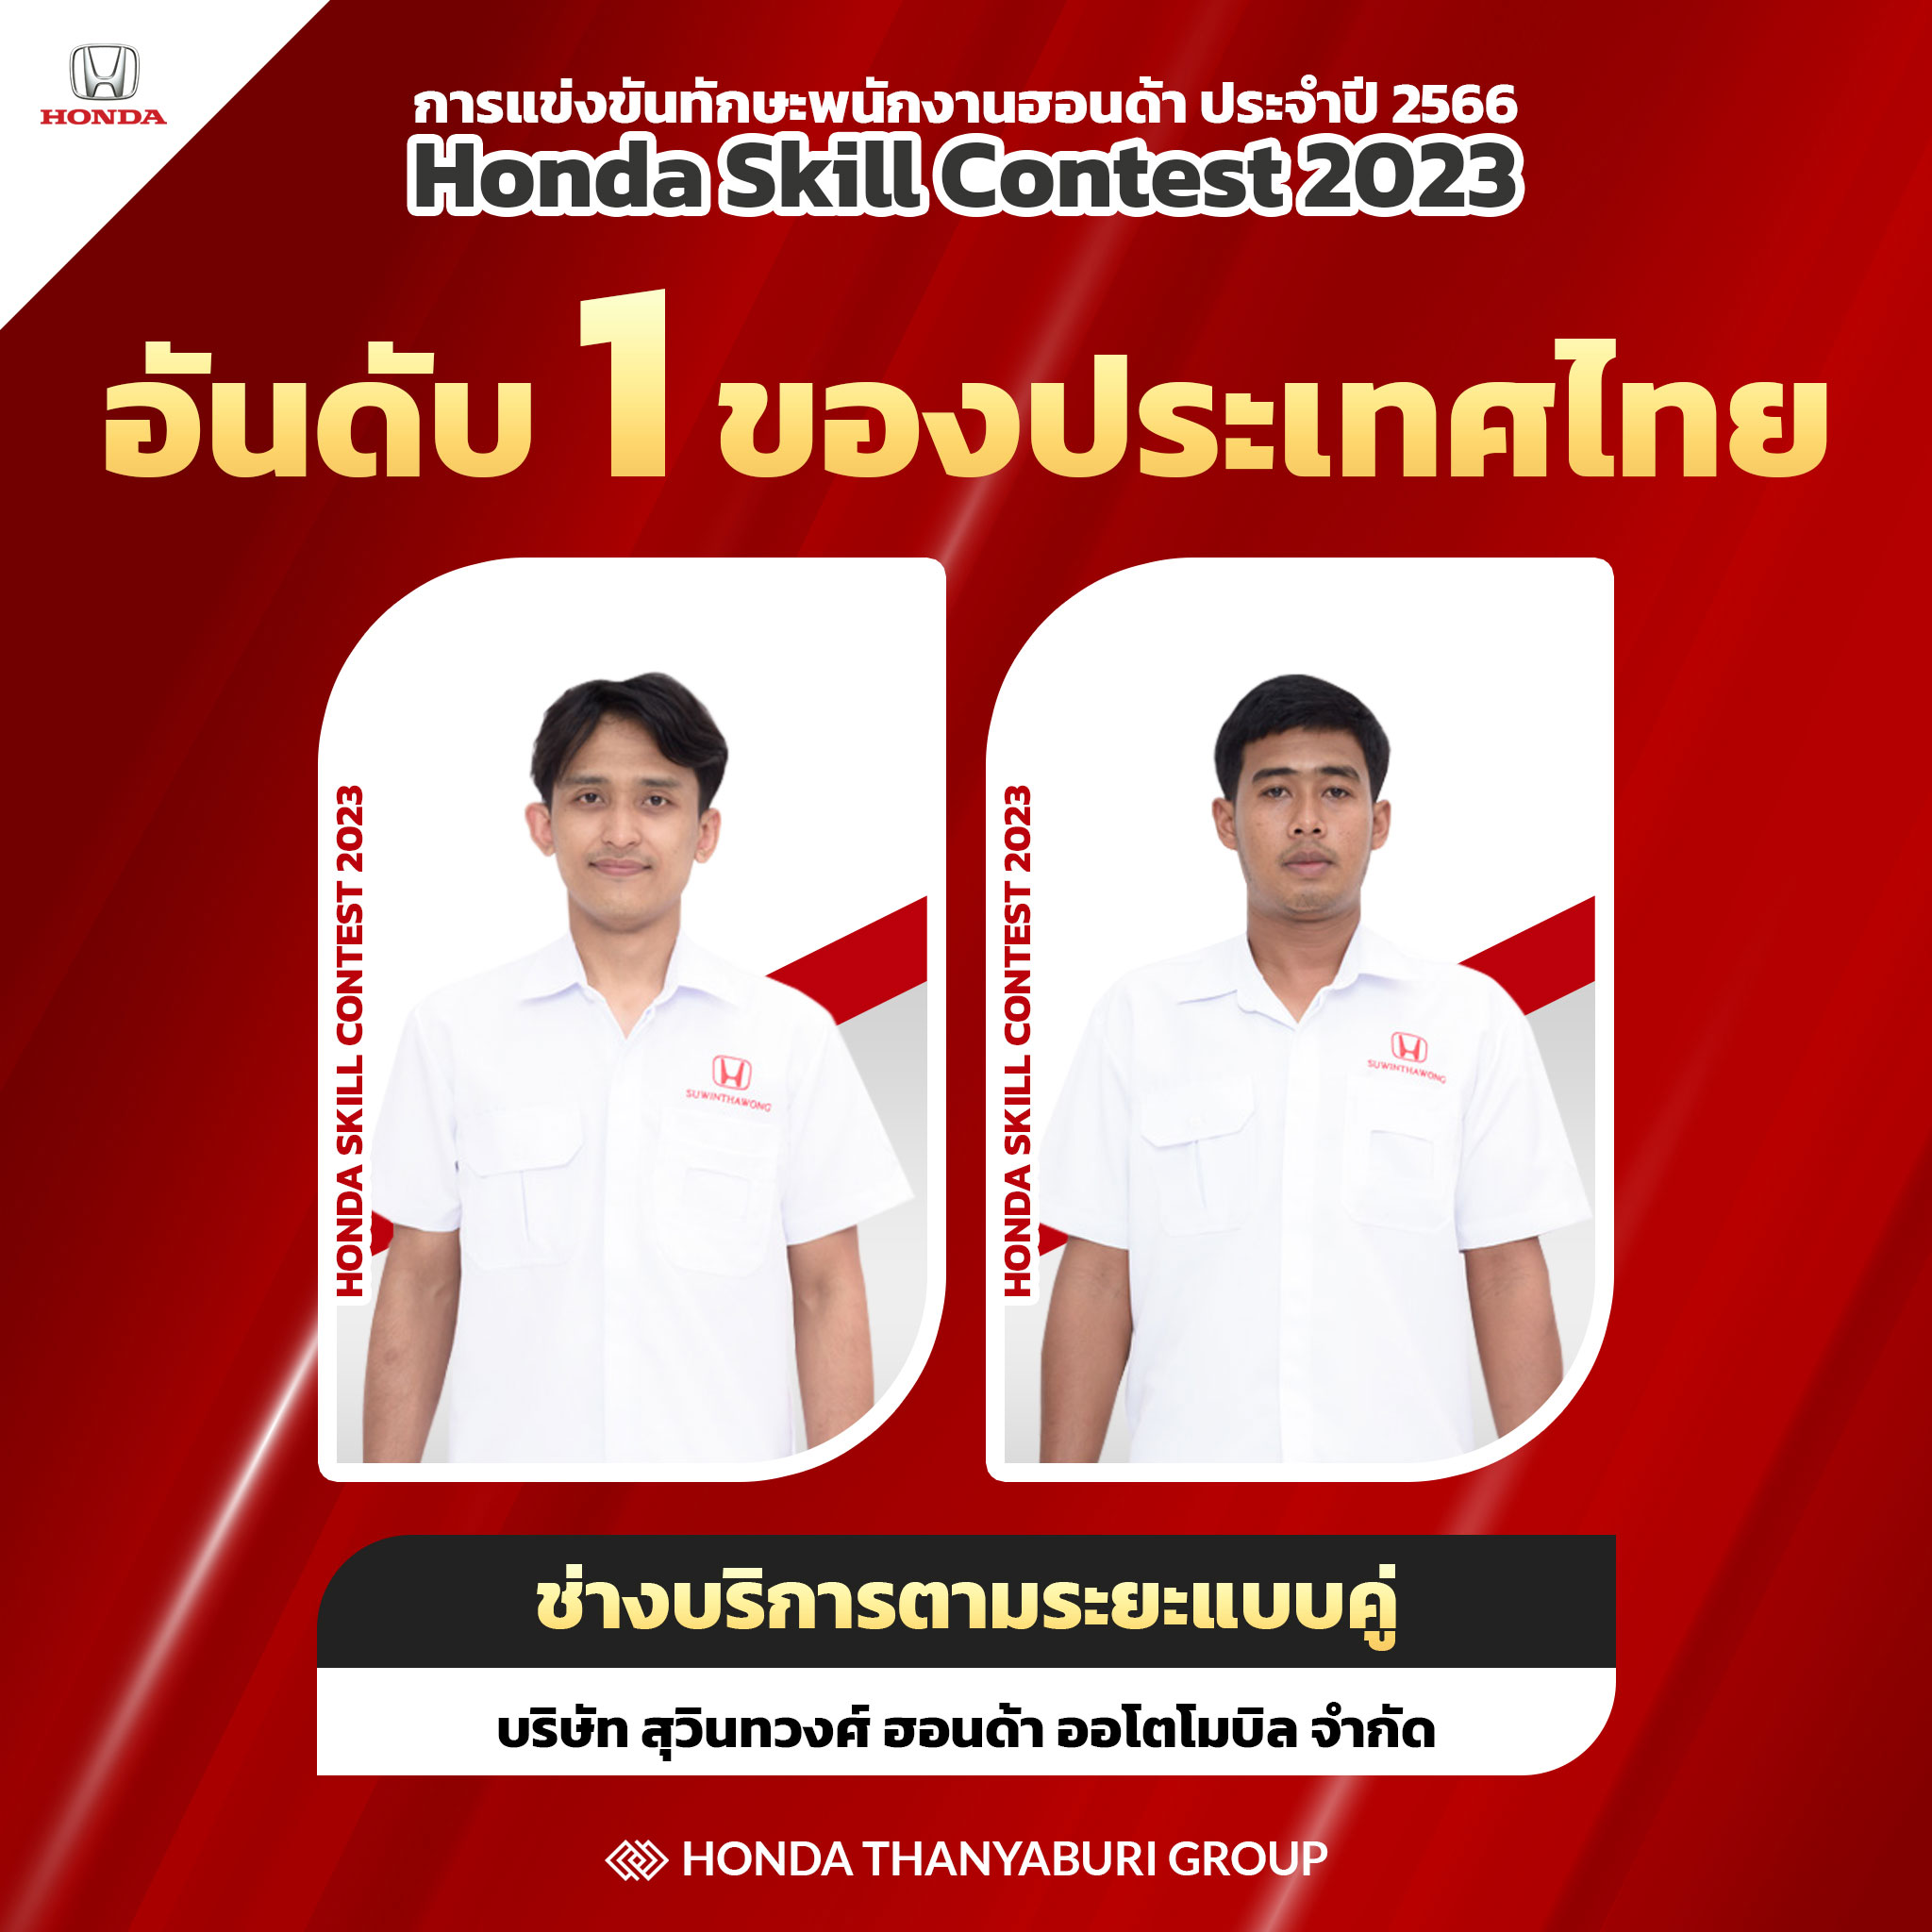 honda thanyaburi group